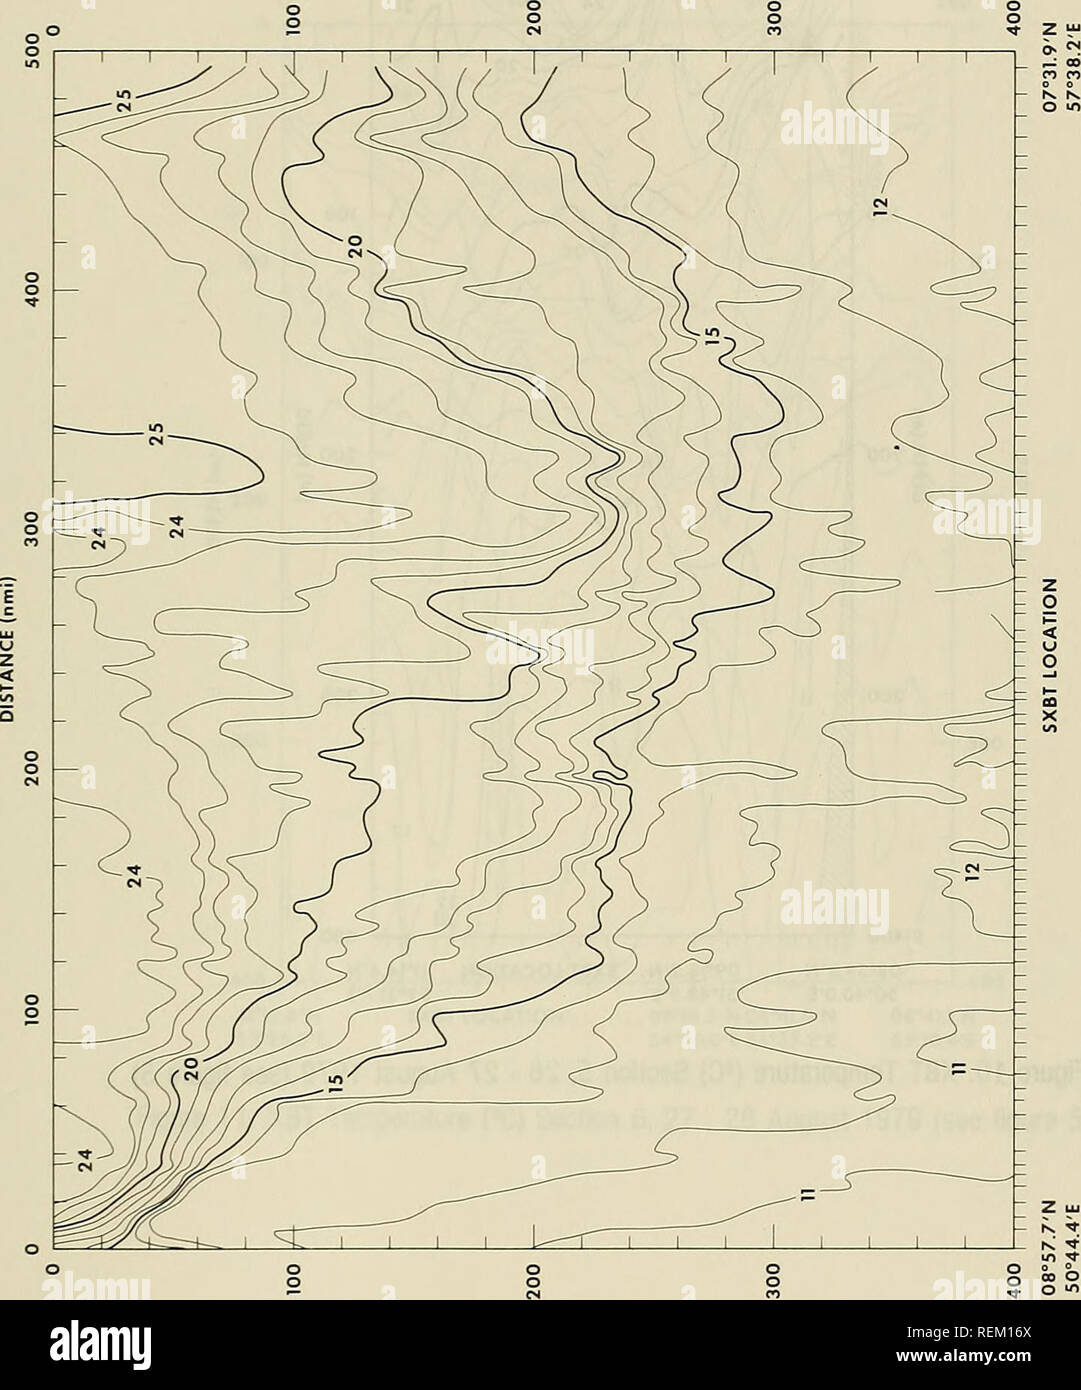 . Circulación y propiedades oceanográficas en la cuenca somalí como se observó durante el monzón del suroeste de 1979. La oceanografía; las corrientes oceánicas; los monzones. Profundidad (m). &Lt; co m X { Hidaa") 33. Por favor tenga en cuenta que estas imágenes son extraídas de la página escaneada imágenes que podrían haber sido mejoradas digitalmente para mejorar la legibilidad, la coloración y el aspecto de estas ilustraciones pueden no parecerse perfectamente a la obra original. Beatty, William H; Bruce, John G; Guthrie, Robert C; Estados Unidos. La Oficina Oceanográfica de la Armada. St. Louis, Mississippi : La Oficina Oceanográfica Naval, NSTL Station Foto de stock